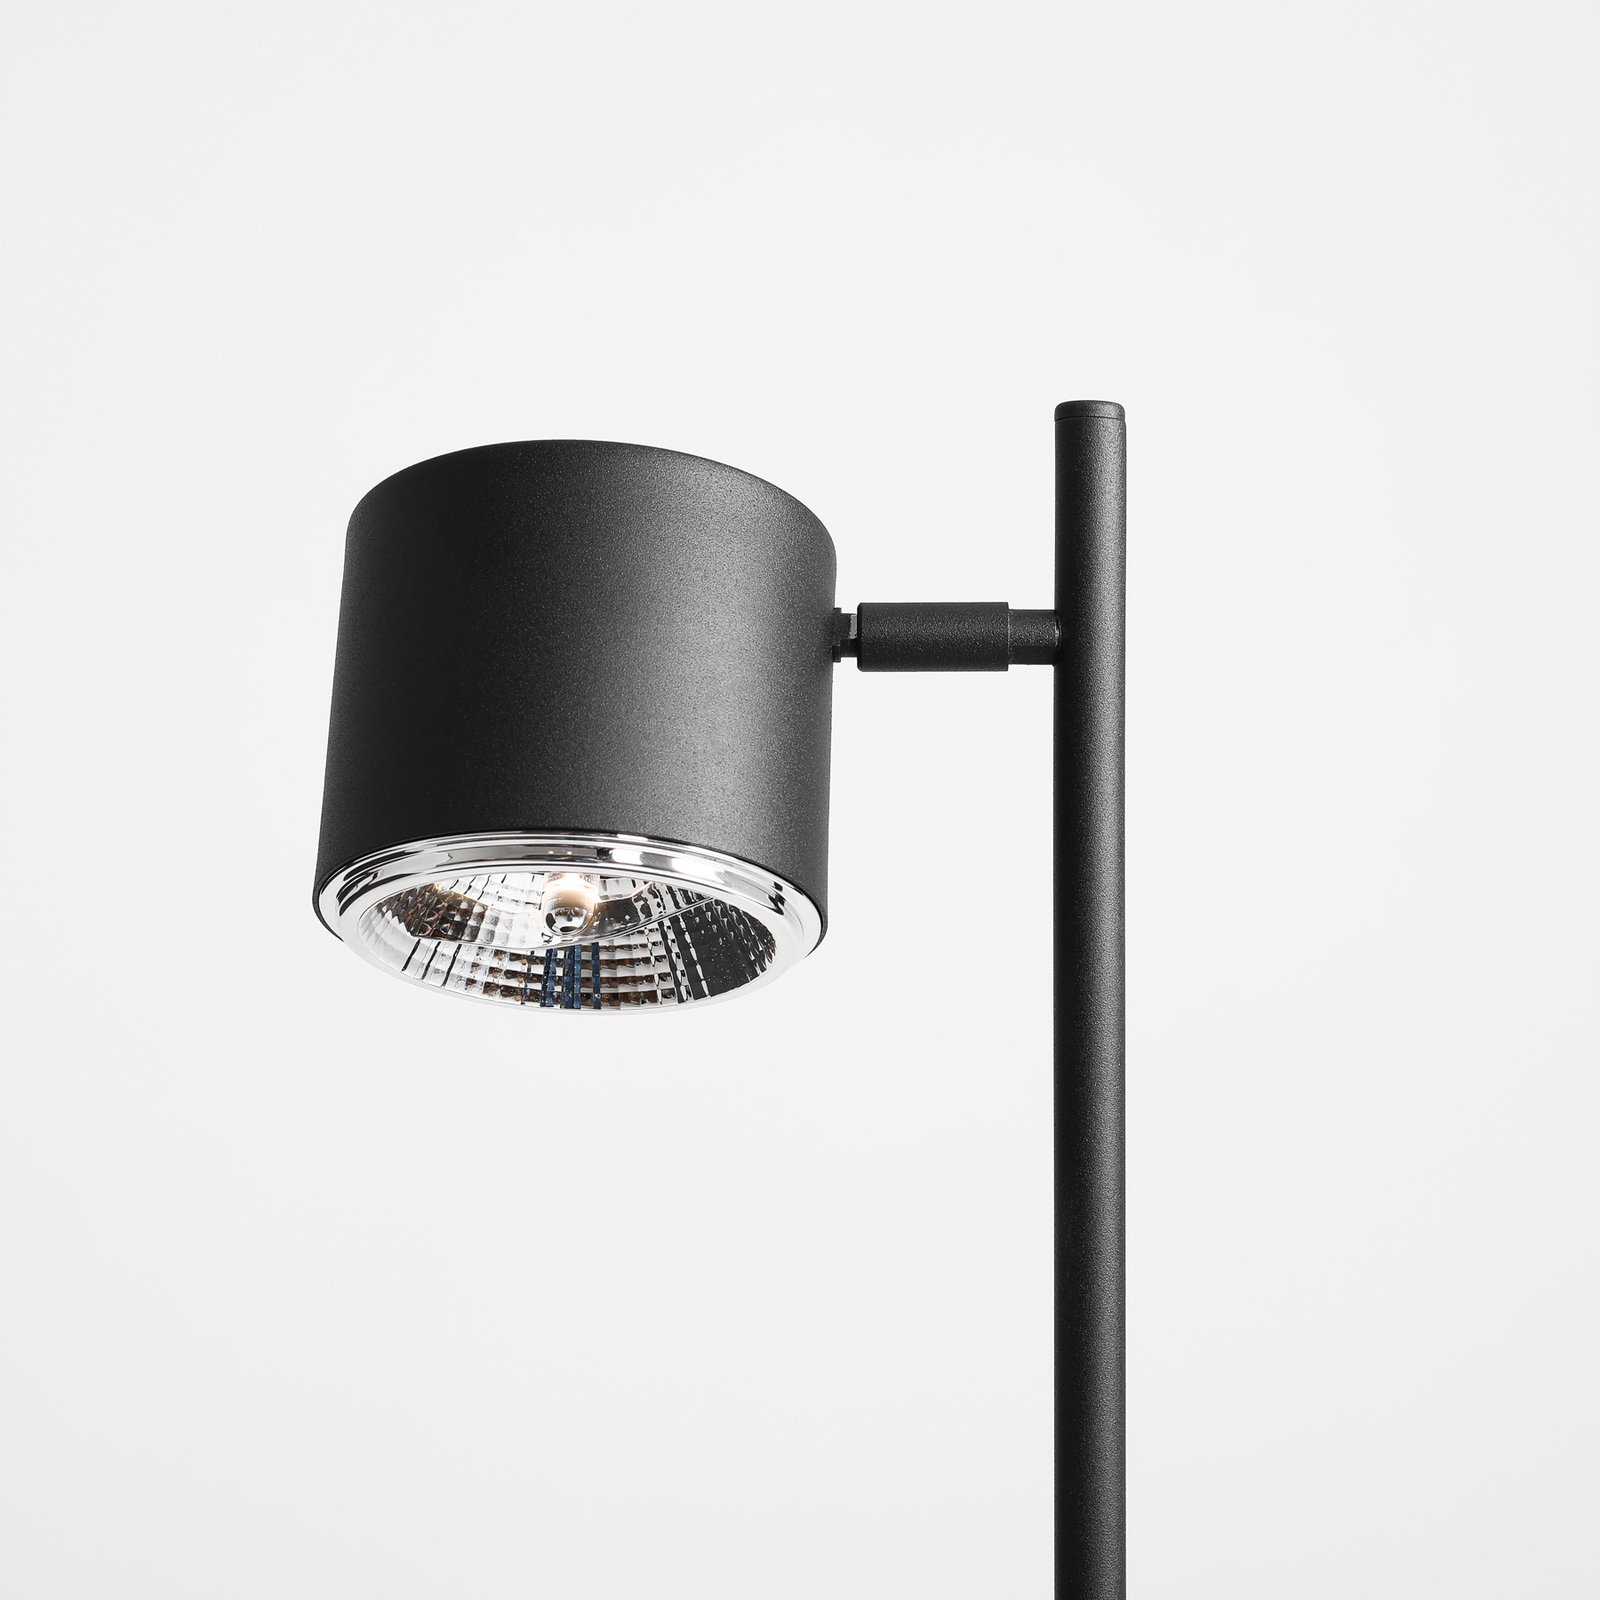 Bot bordlampe, svart bevegelig lampehode